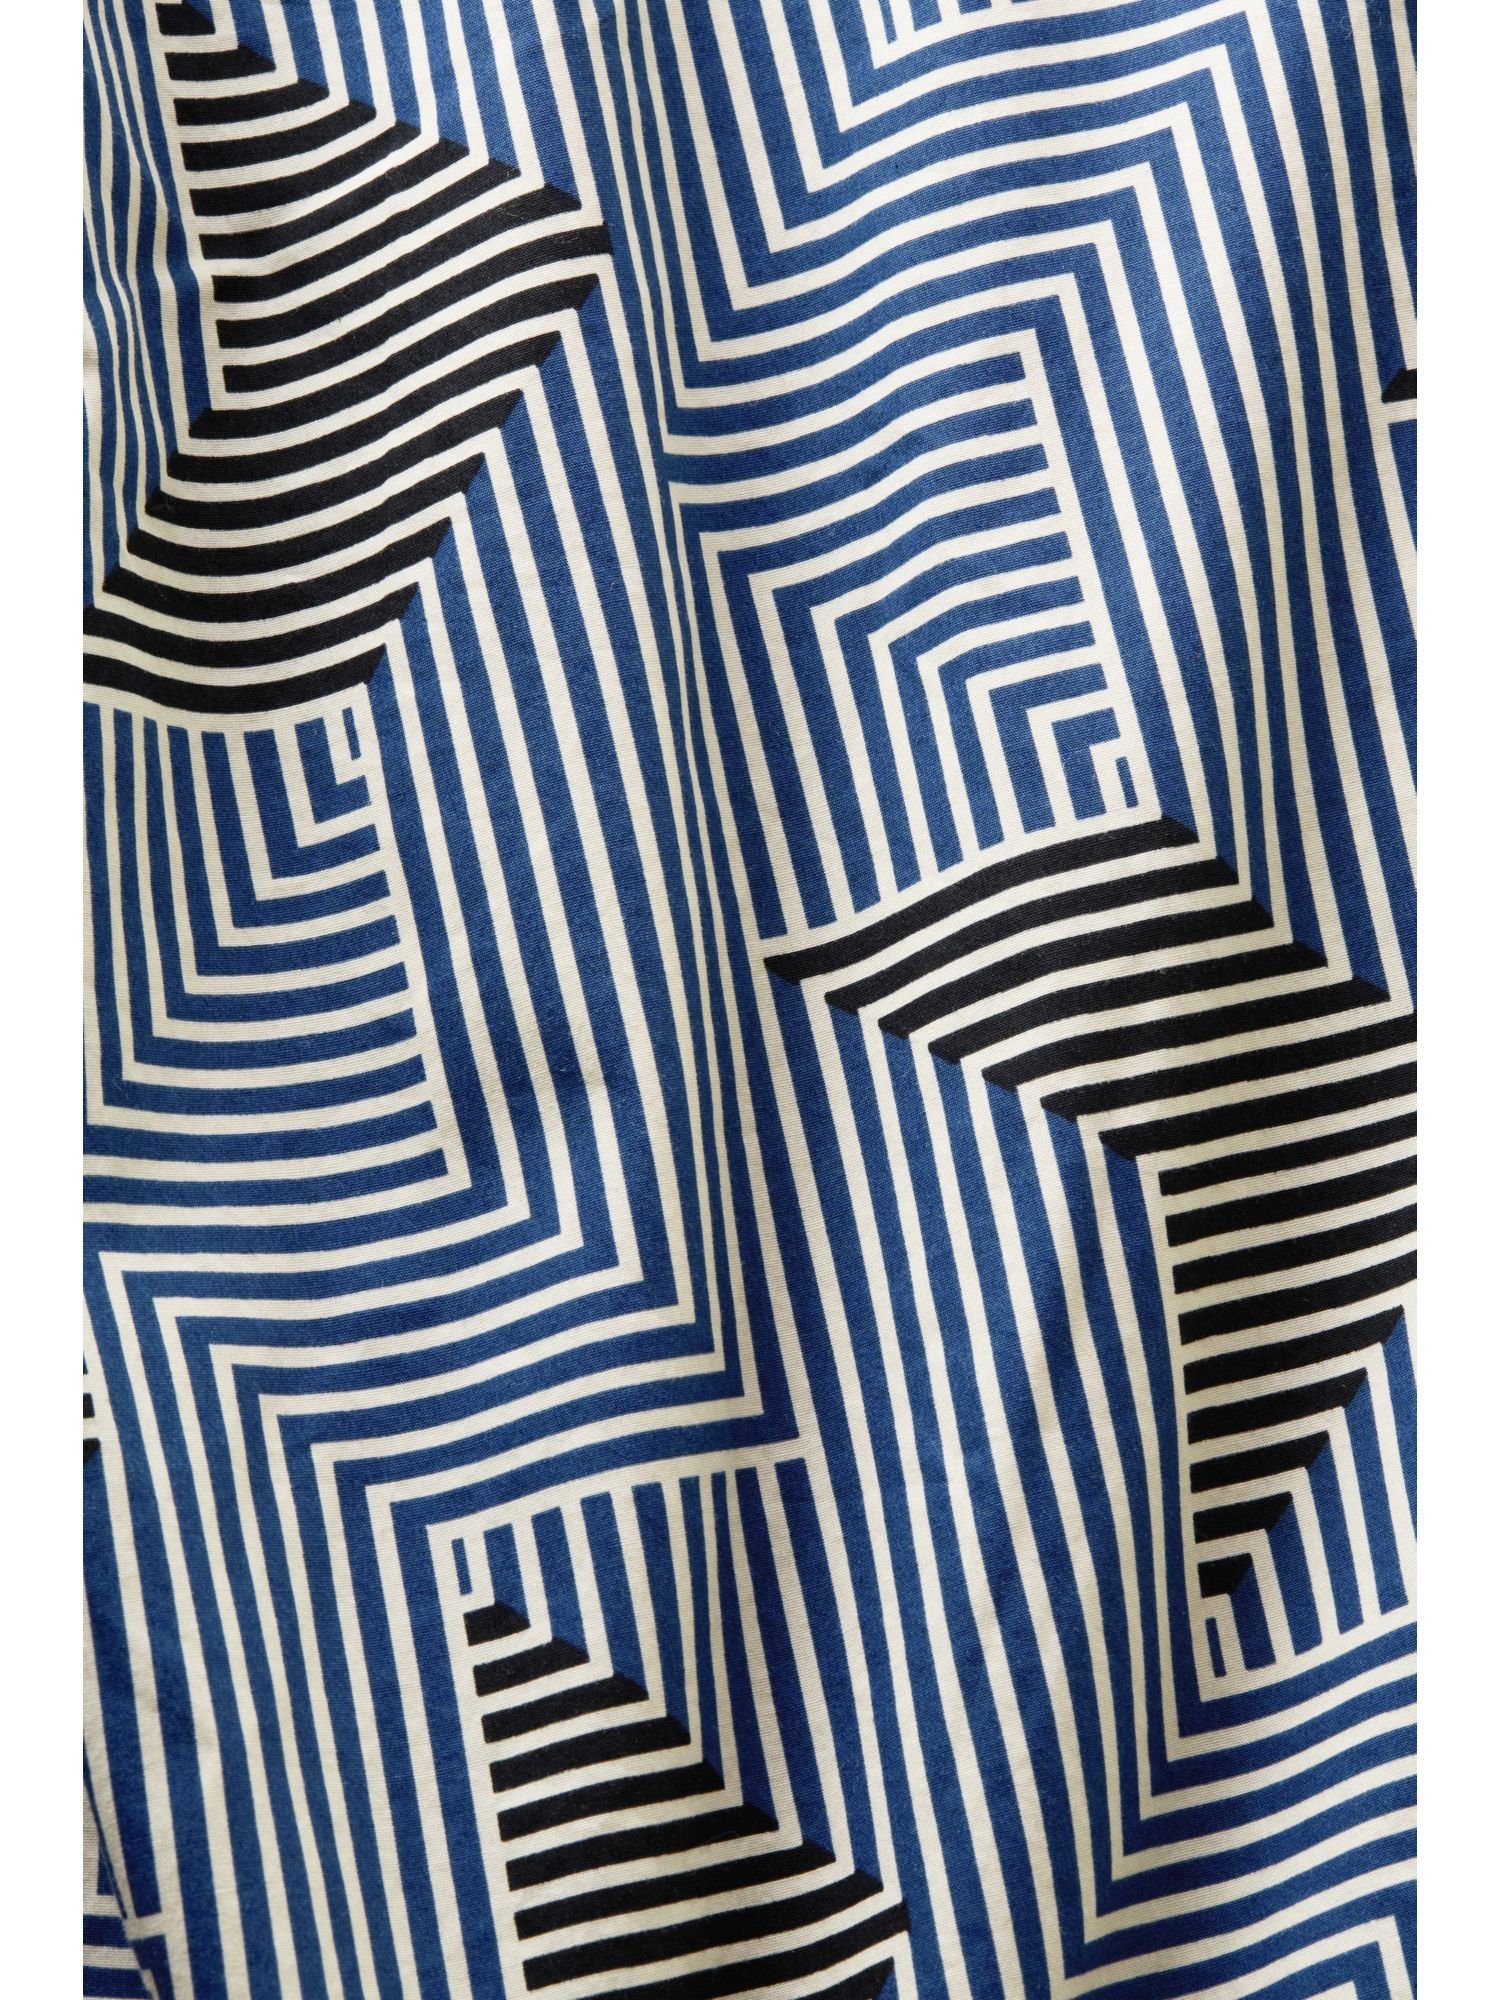 in normaler Hemd Print BLUE geometrischem mit BRIGHT Langarmhemd Passform Esprit